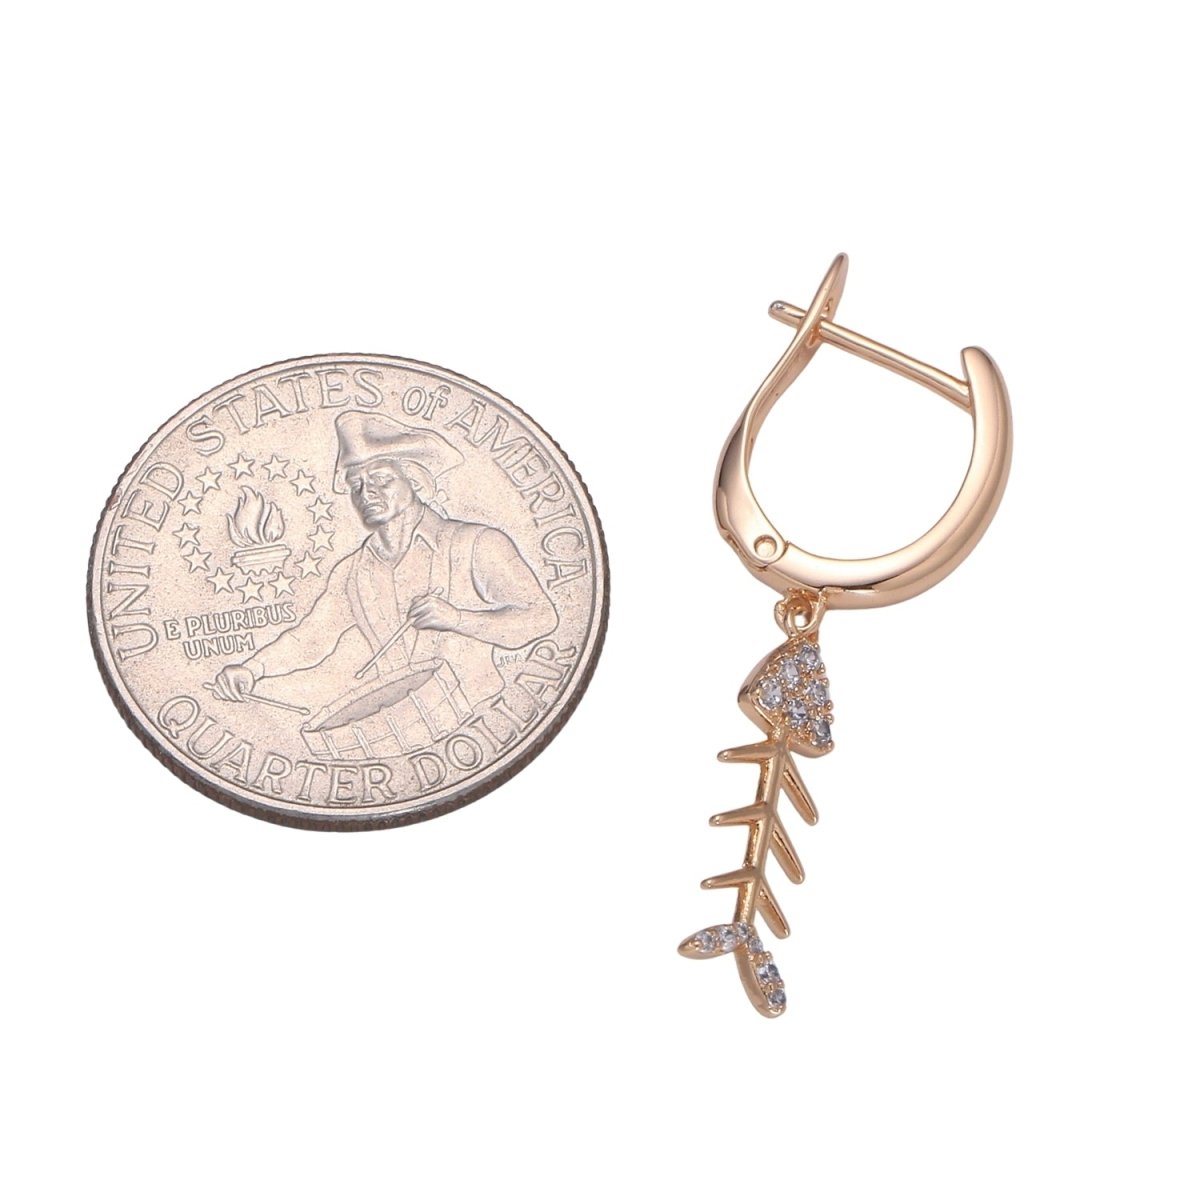 Gold fish bone hoop earring endless hoops huggies dangle earring simple earrings everyday gift for her P-205 - DLUXCA